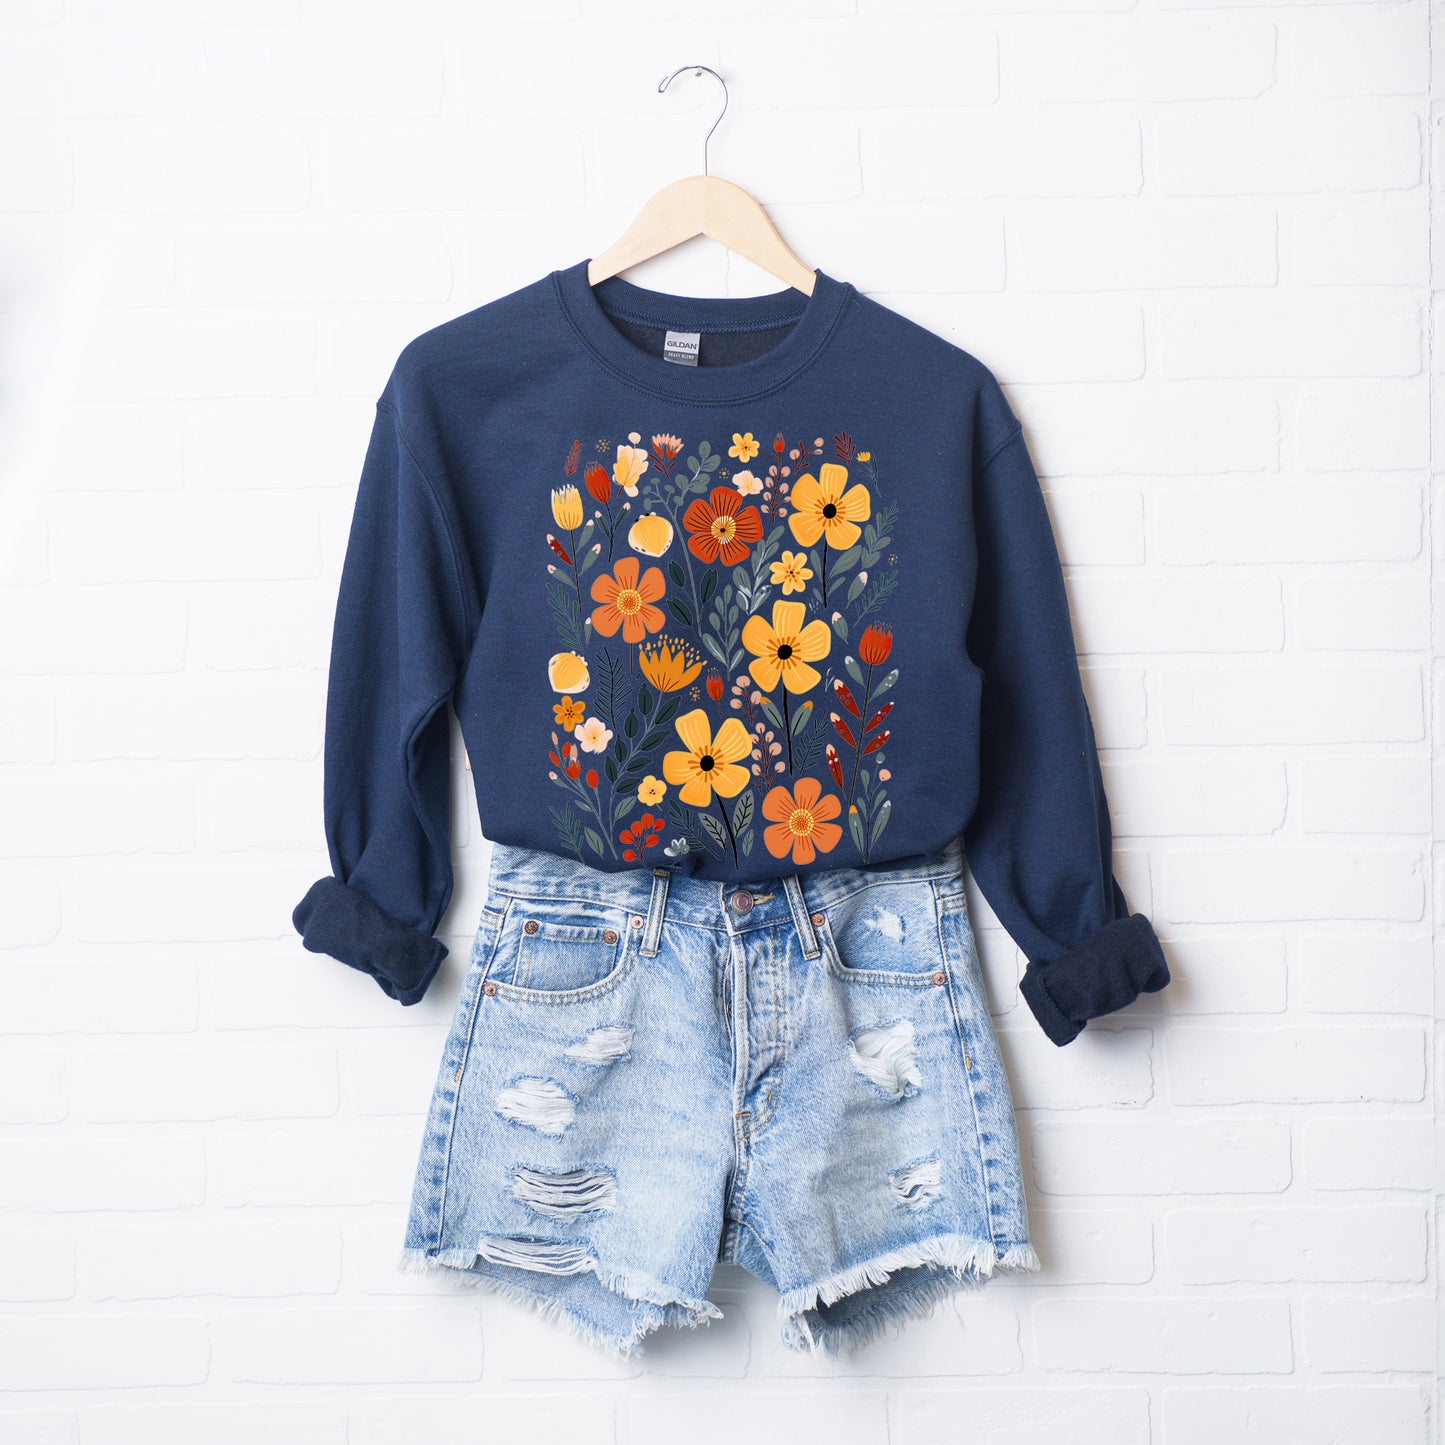 Nature Wildflowers | Sweatshirt